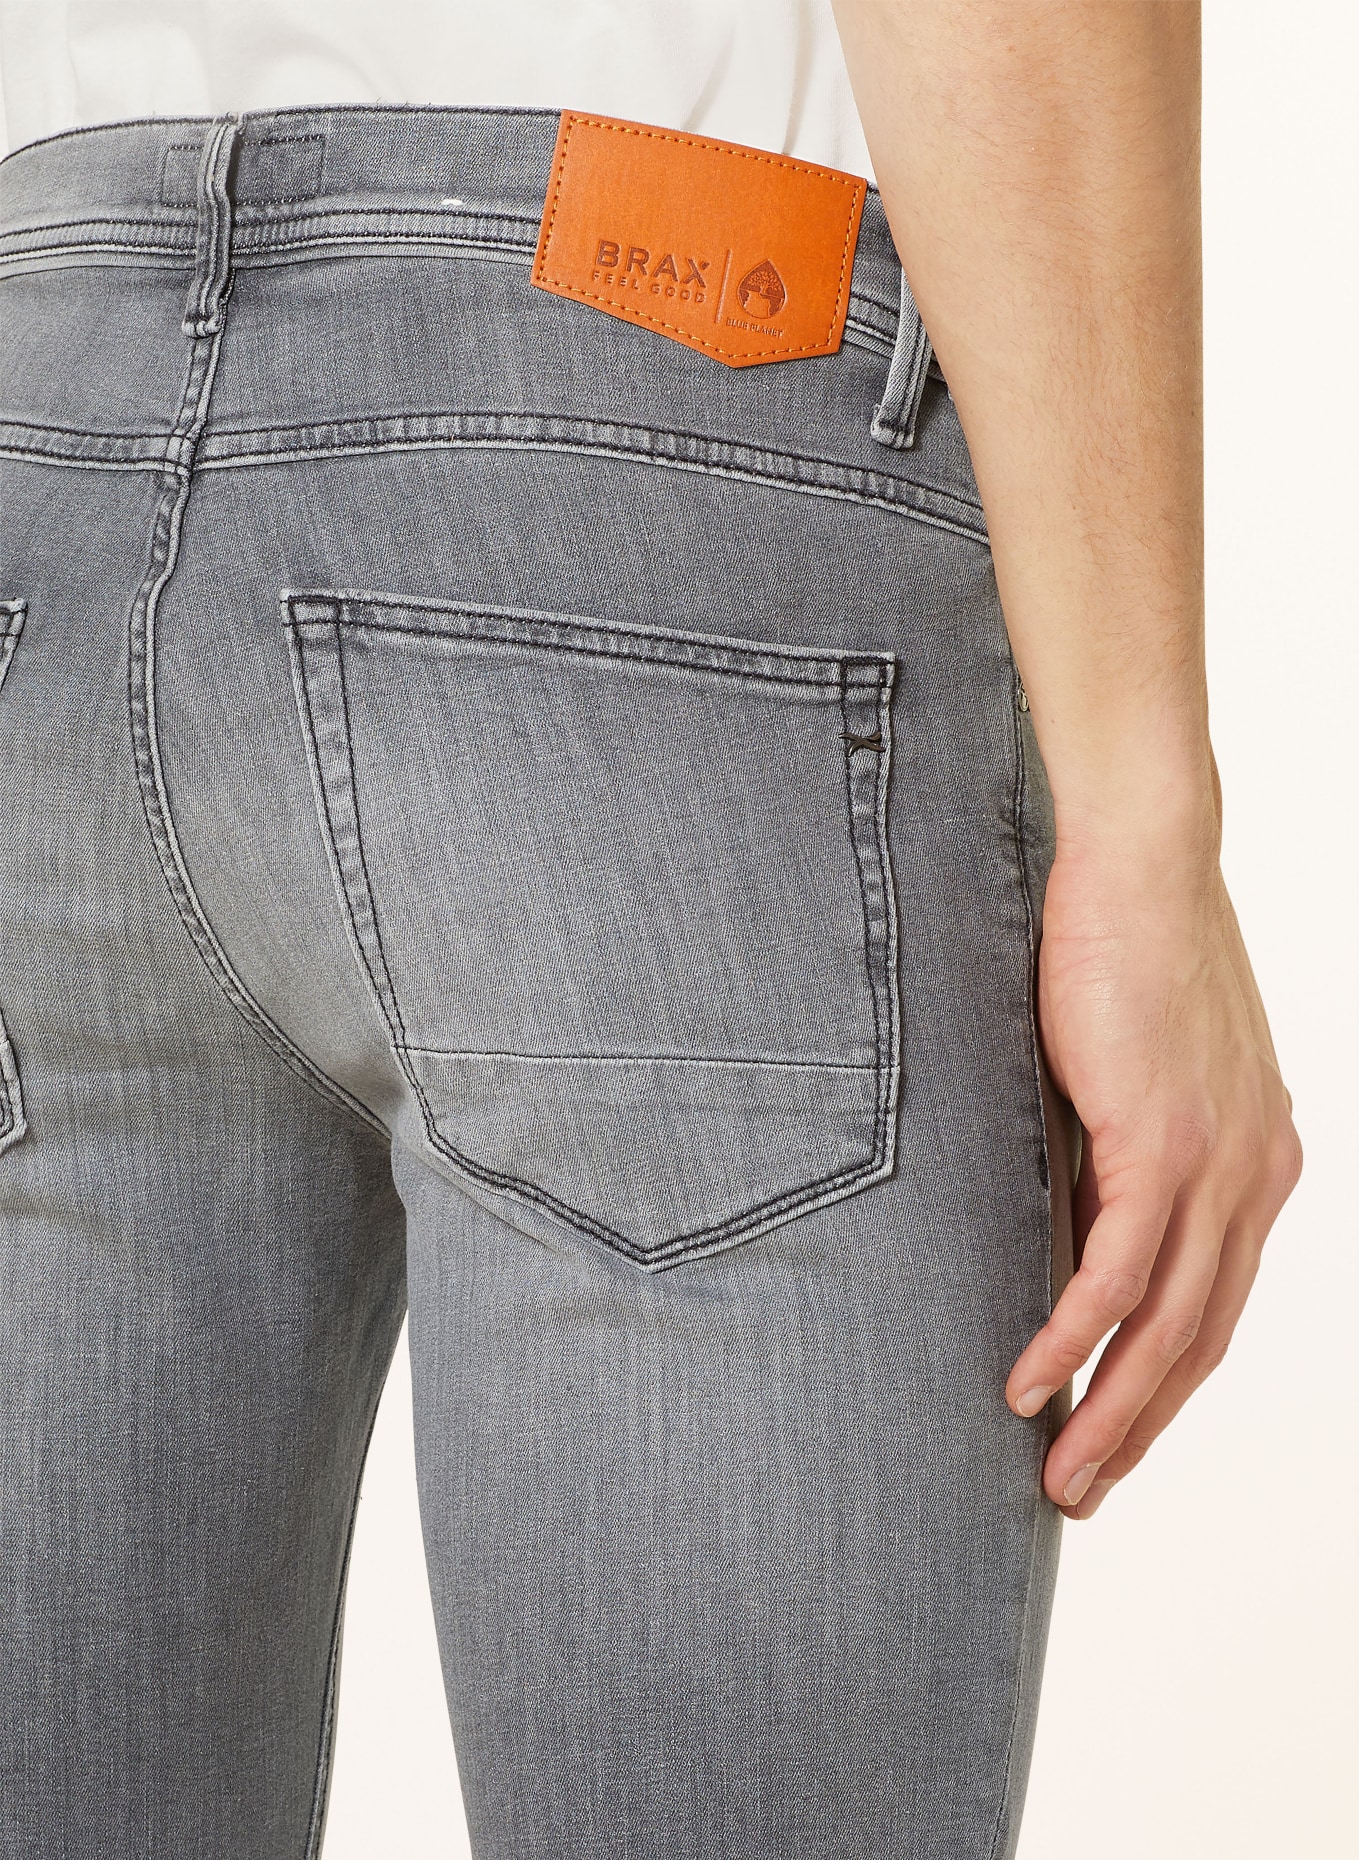 BRAX Jeans CHRIS Slim Fit, Farbe: 06 06 (Bild 6)